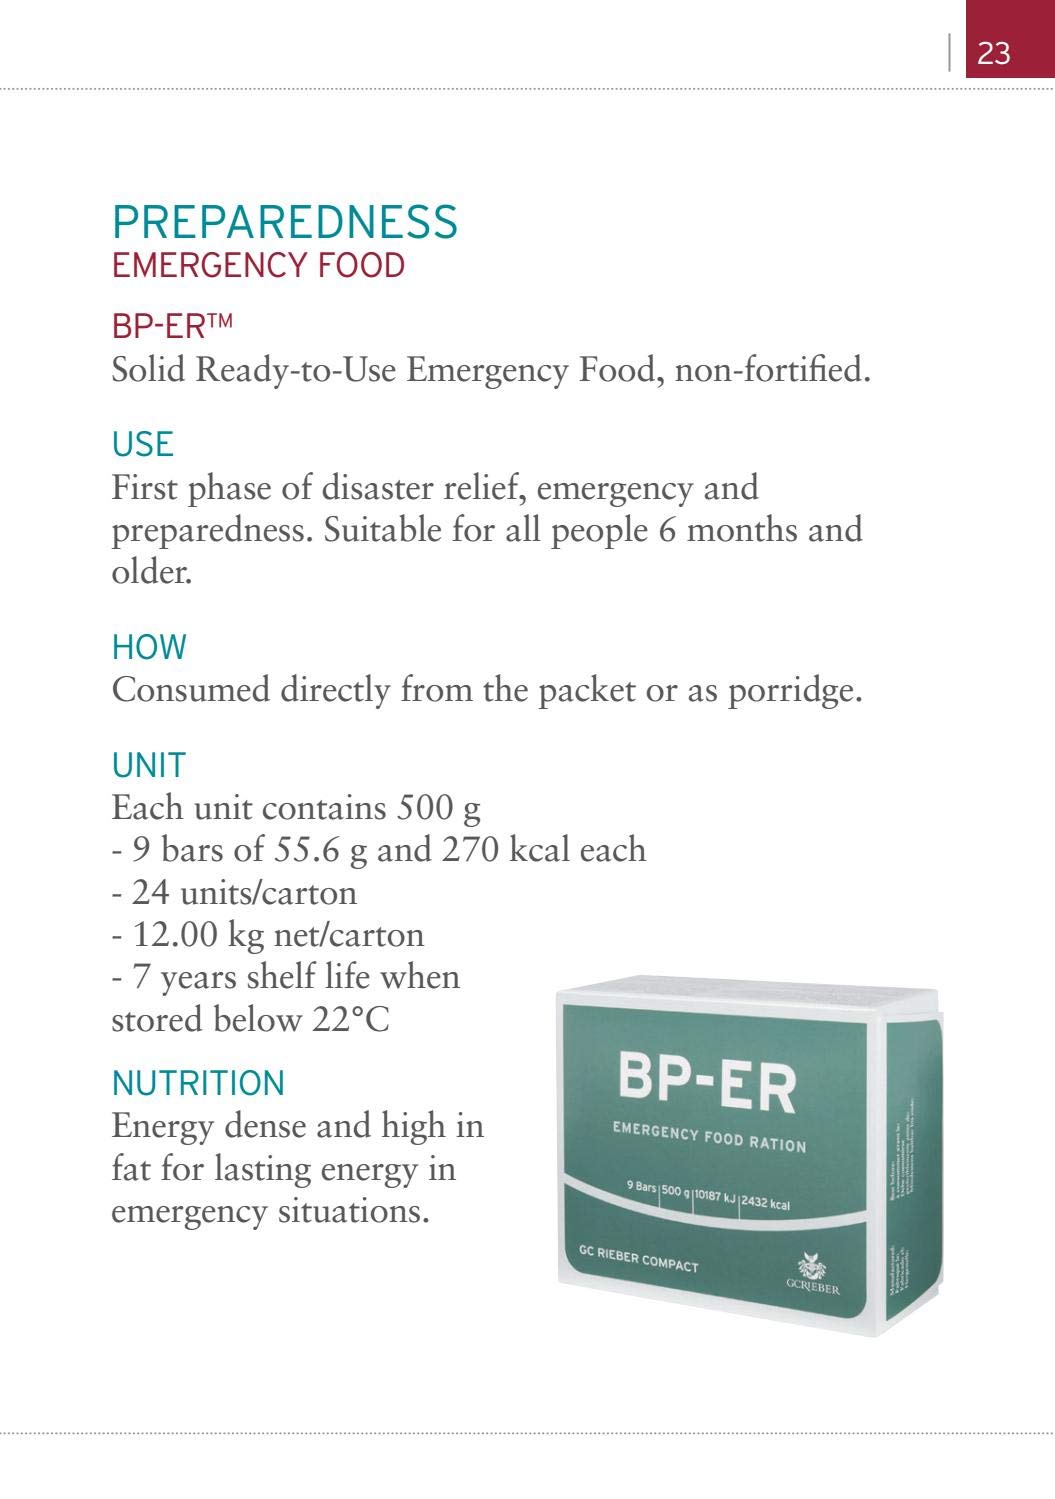 Avarinis davinys BP-ER 7 dienos apie 17500 kcal - Kompaktiškas, patvarus, lengvas maistas BP-ER